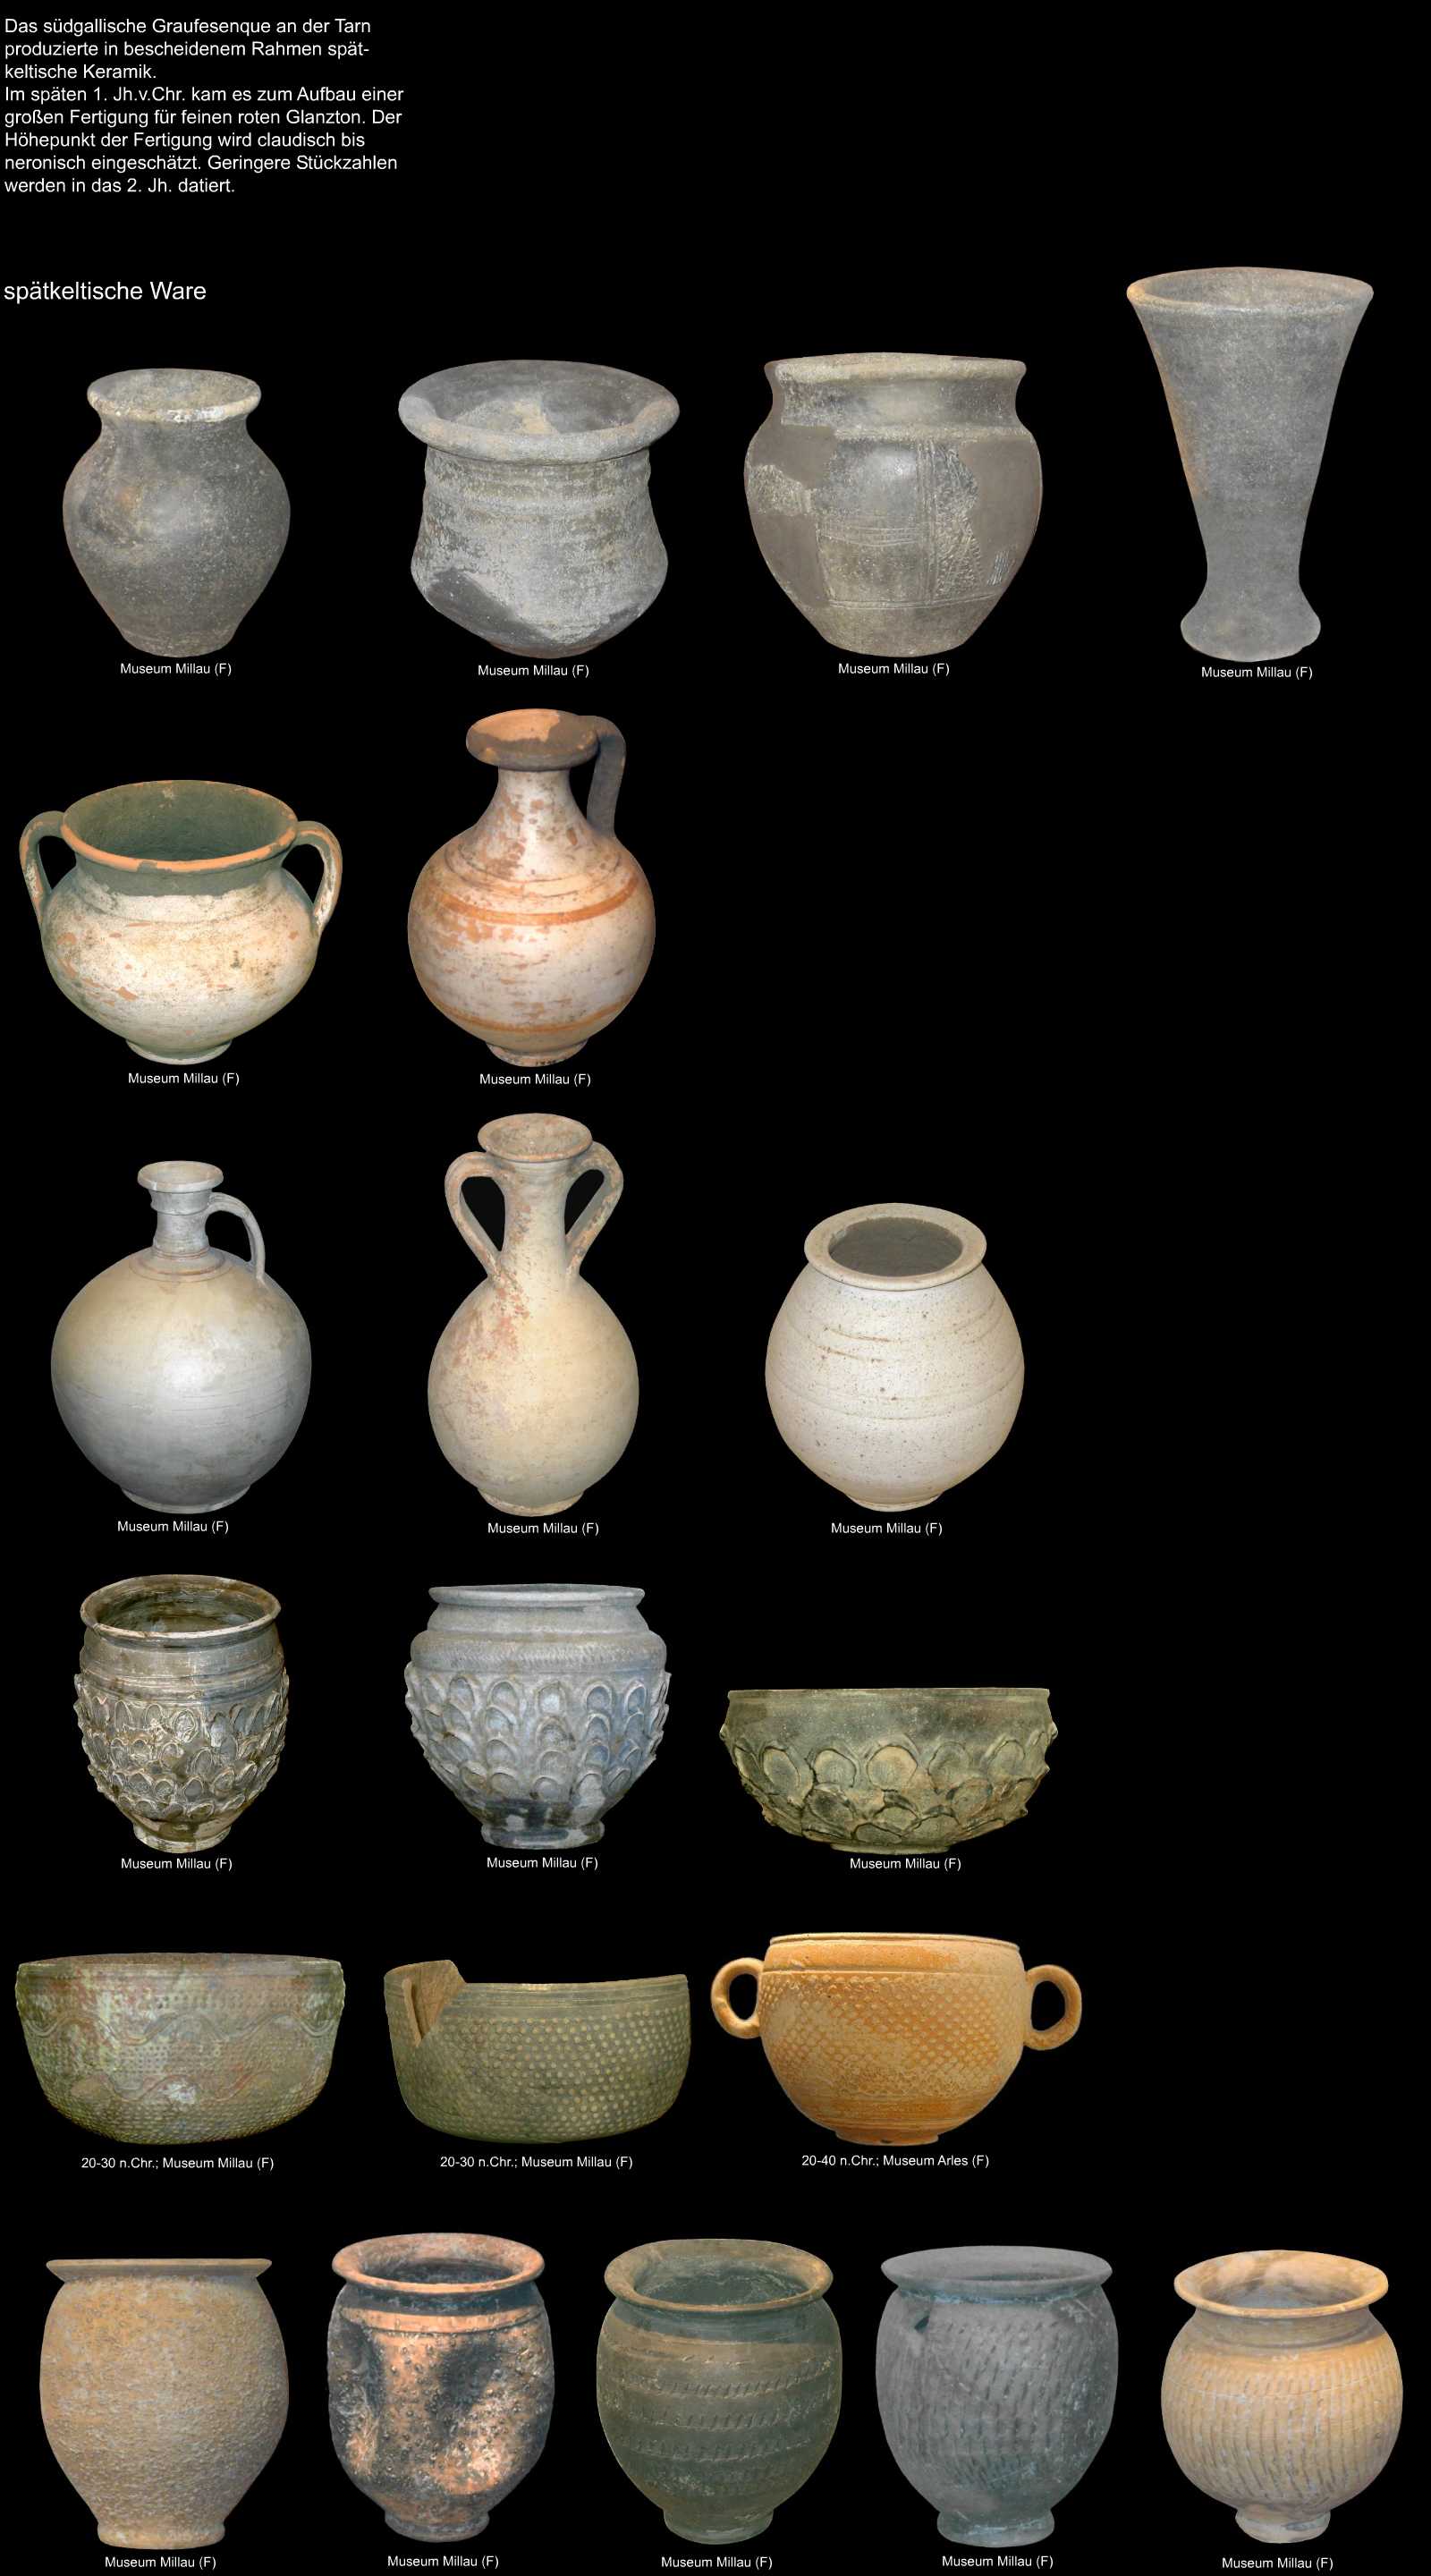 Keramik aus Graufesenque